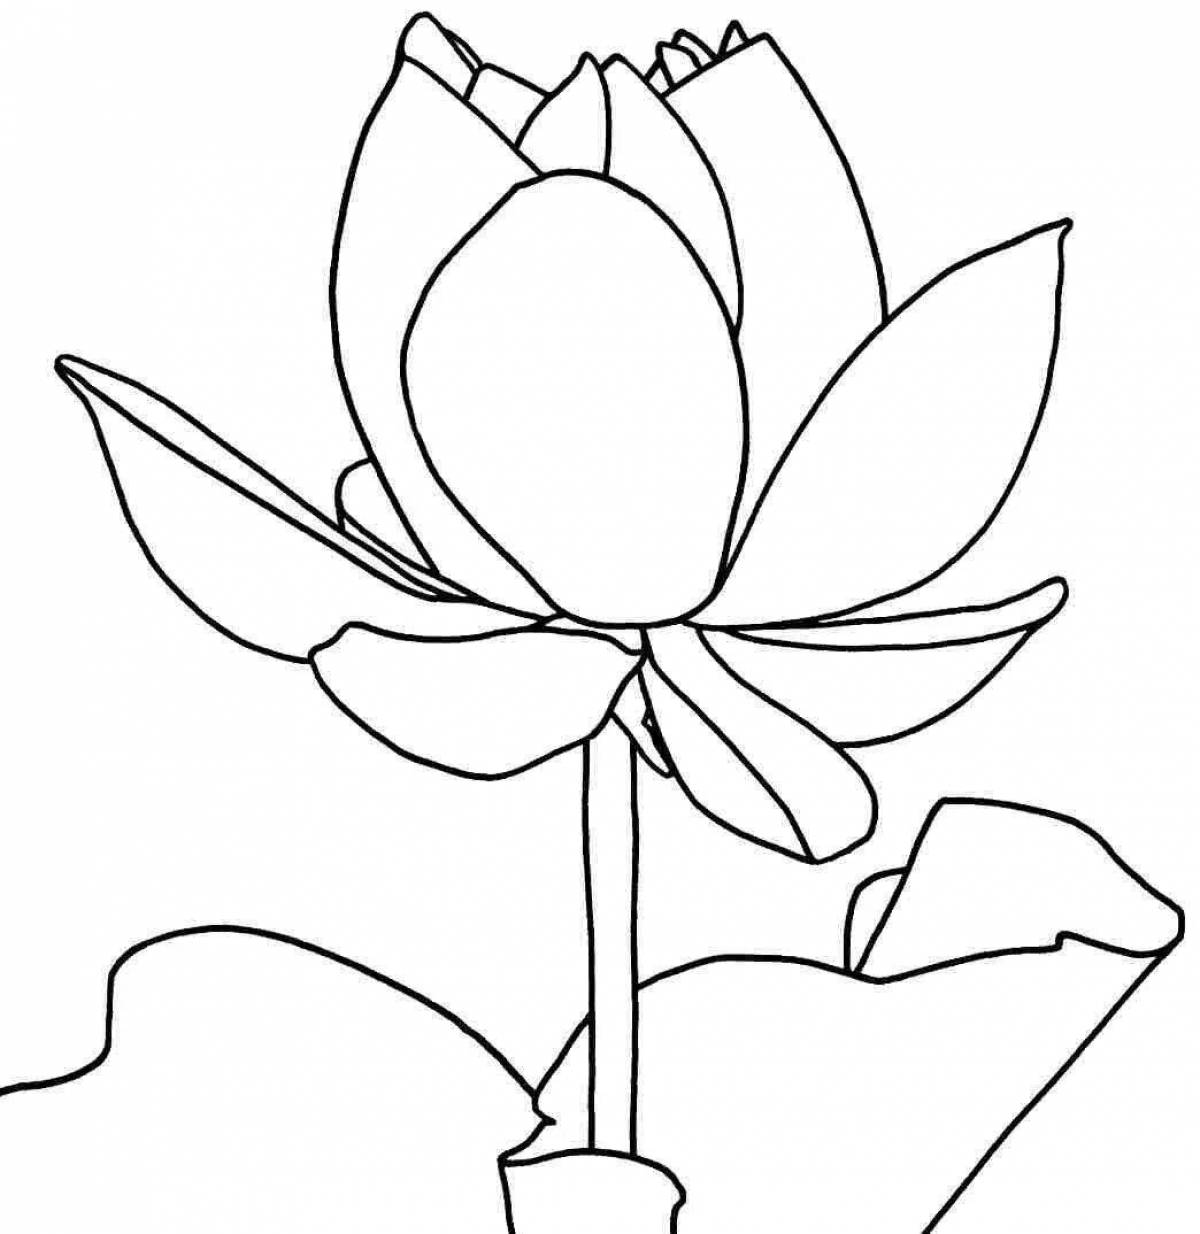 Fun lotus coloring book for kids